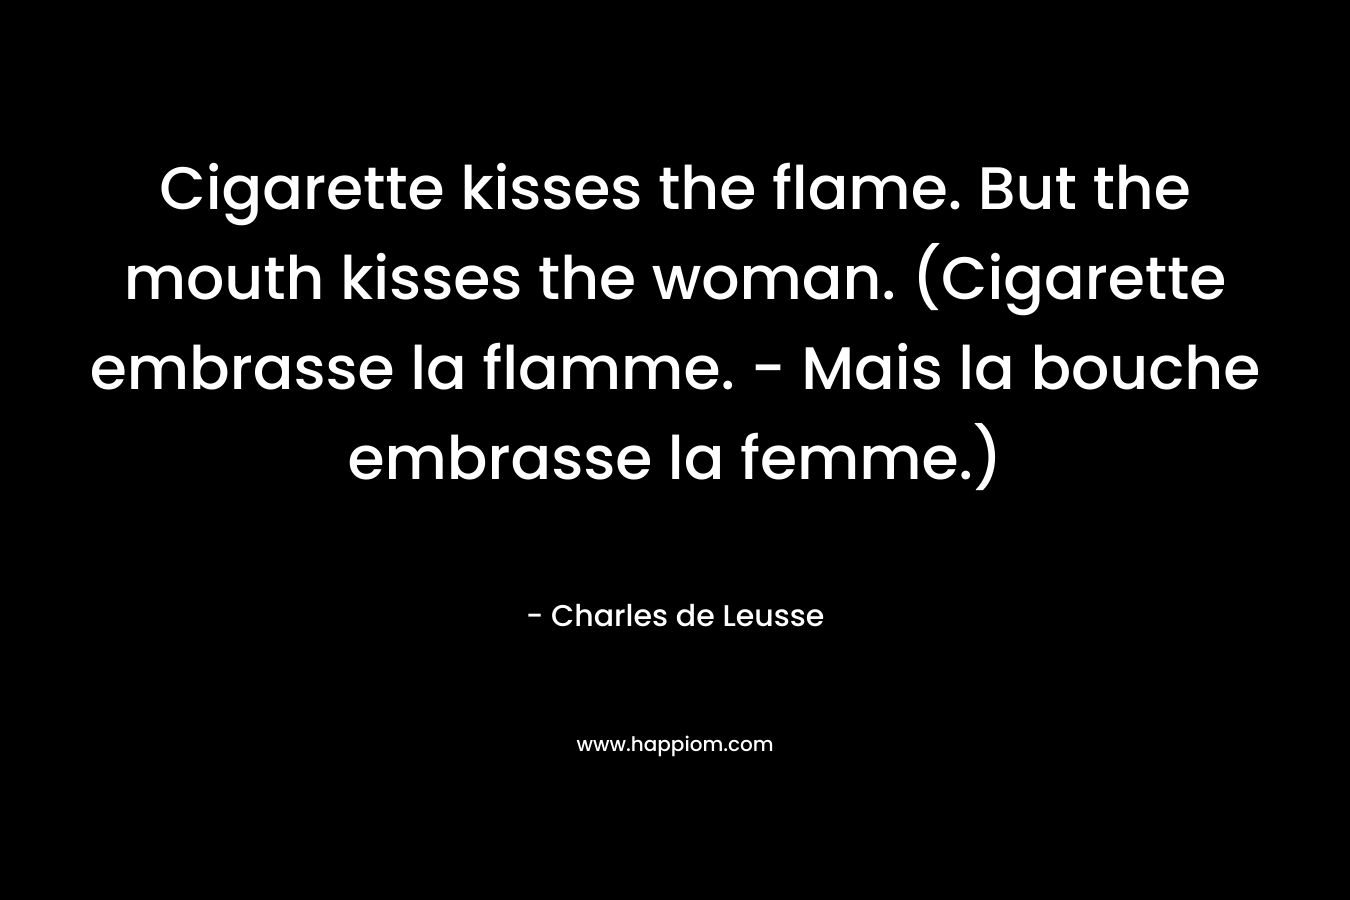 Cigarette kisses the flame. But the mouth kisses the woman. (Cigarette embrasse la flamme. - Mais la bouche embrasse la femme.)